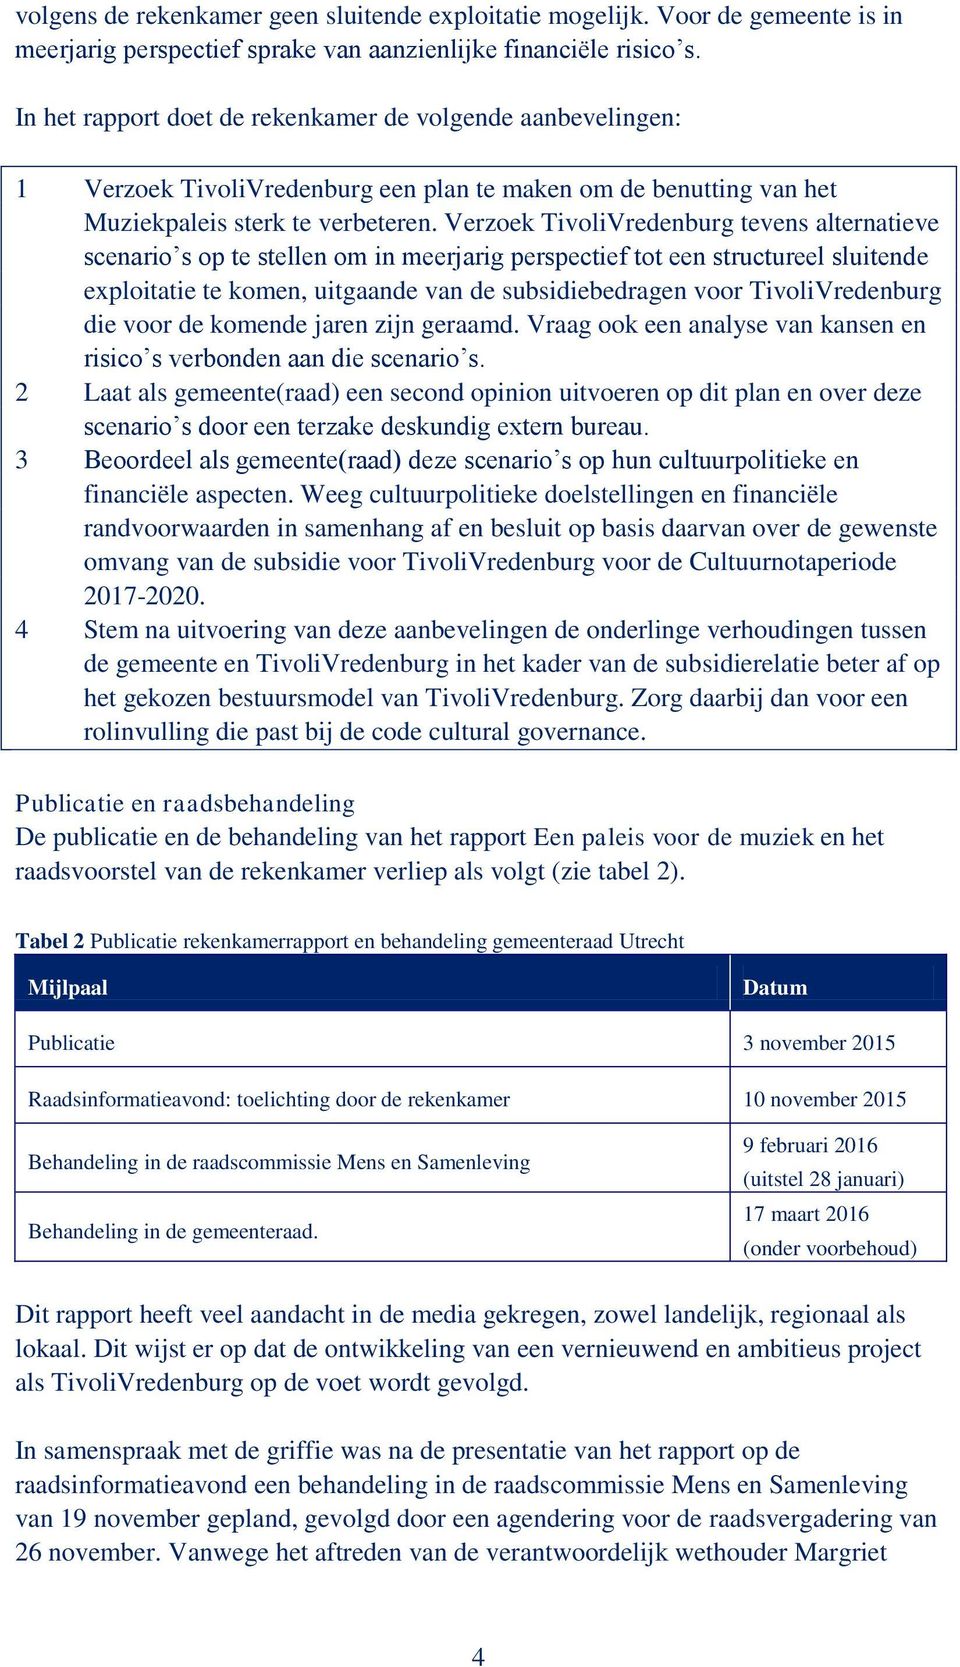 Verzoek TivoliVredenburg tevens alternatieve scenario s op te stellen om in meerjarig perspectief tot een structureel sluitende exploitatie te komen, uitgaande van de subsidiebedragen voor